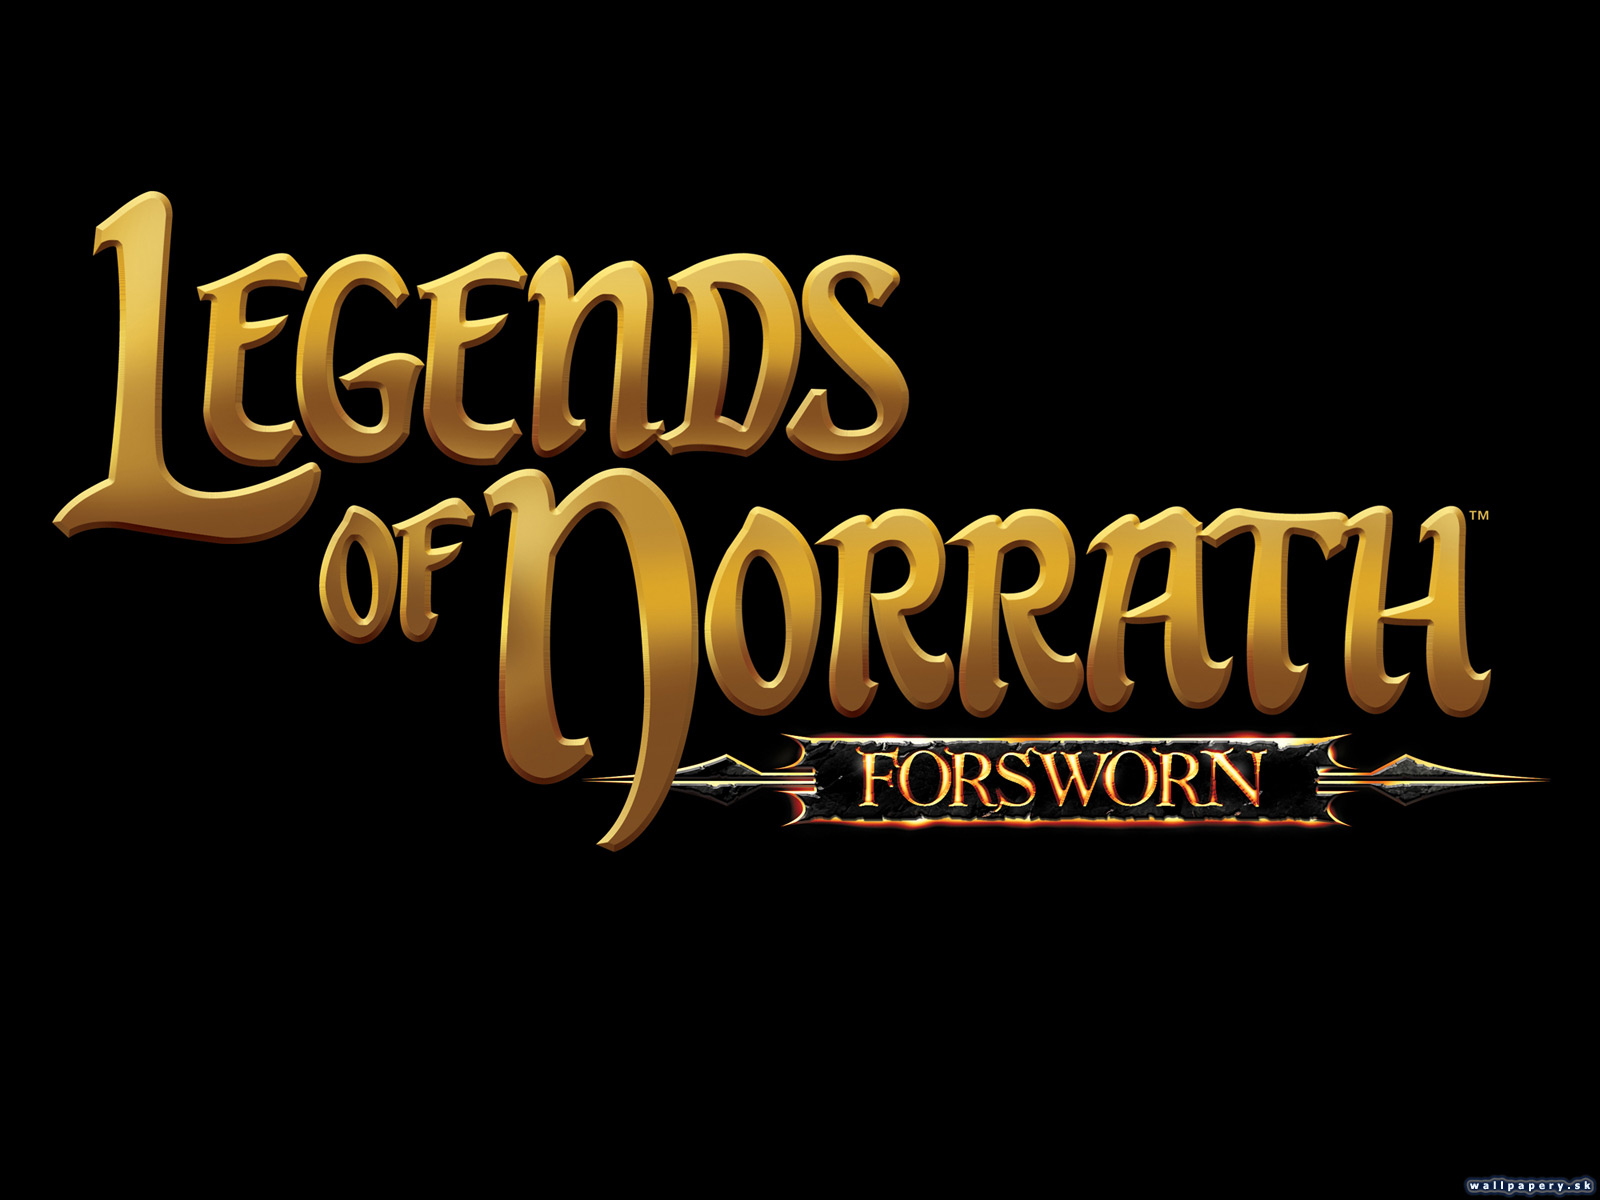 Legends of Norrath: Forsworn - wallpaper 1